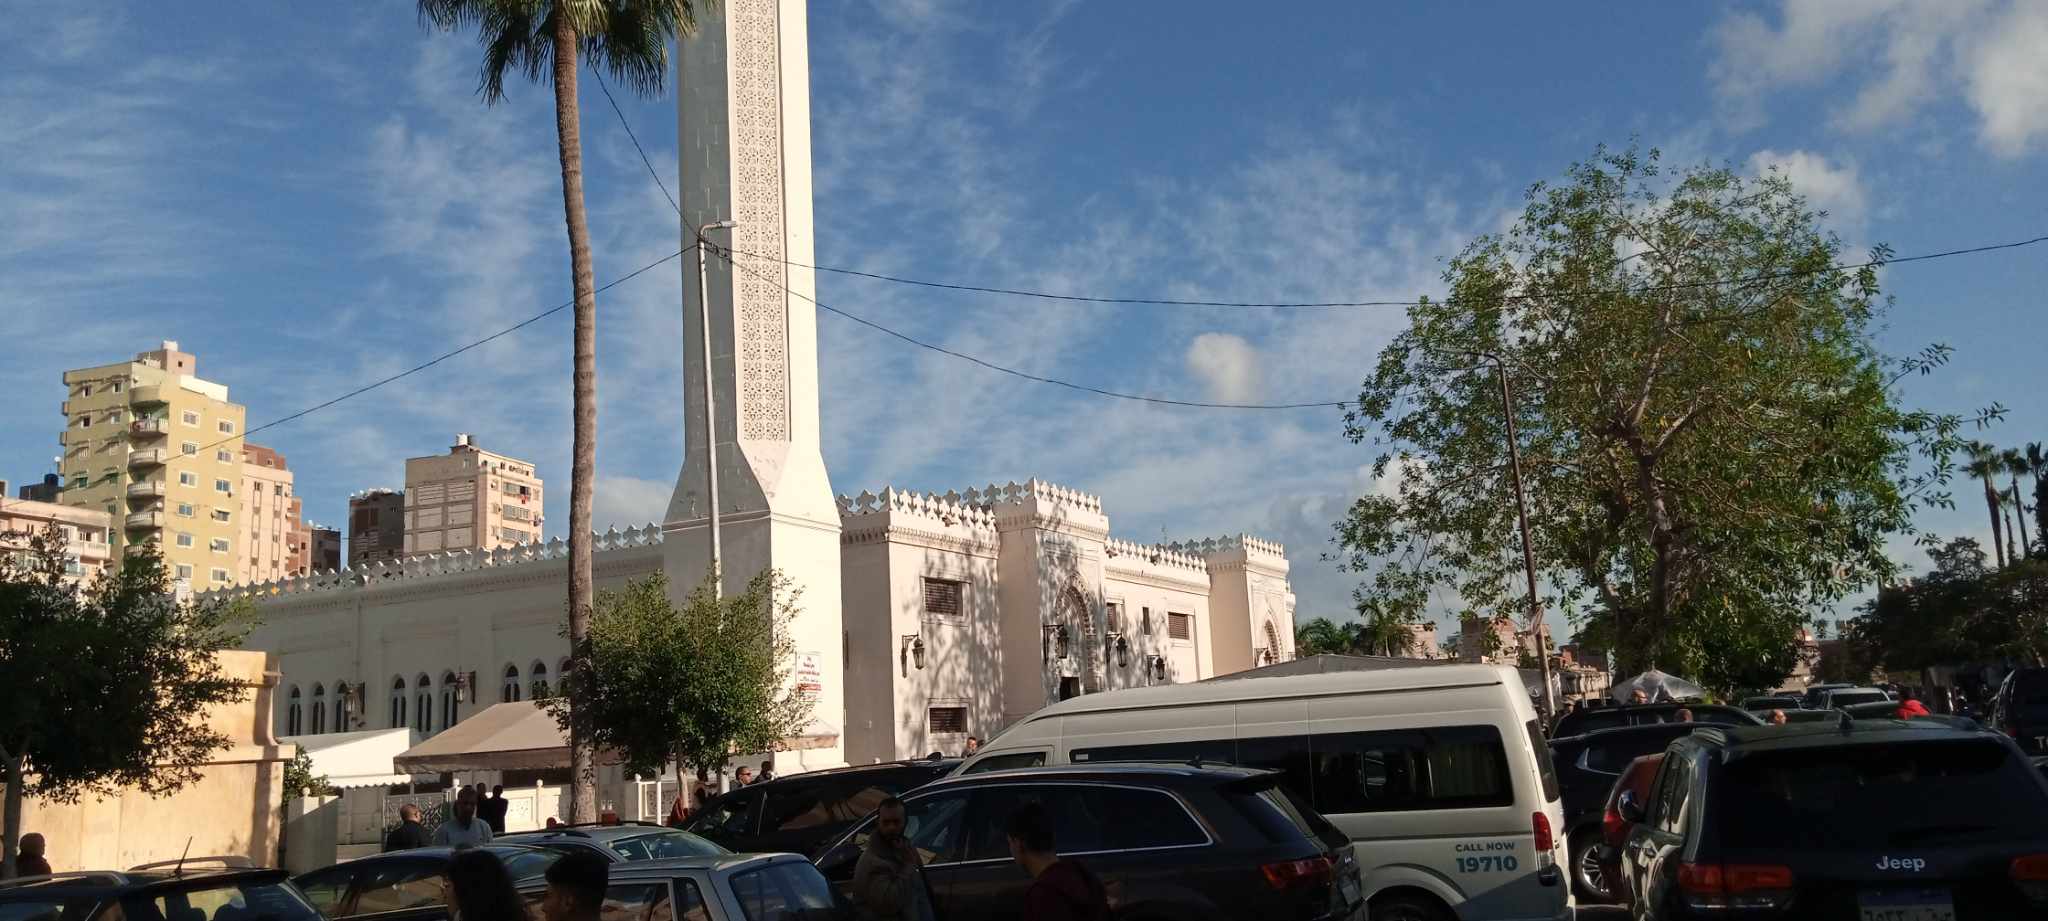 وصول جثمان اللواء عدلي منصور الي مسجد المواساة في الاسكندرية